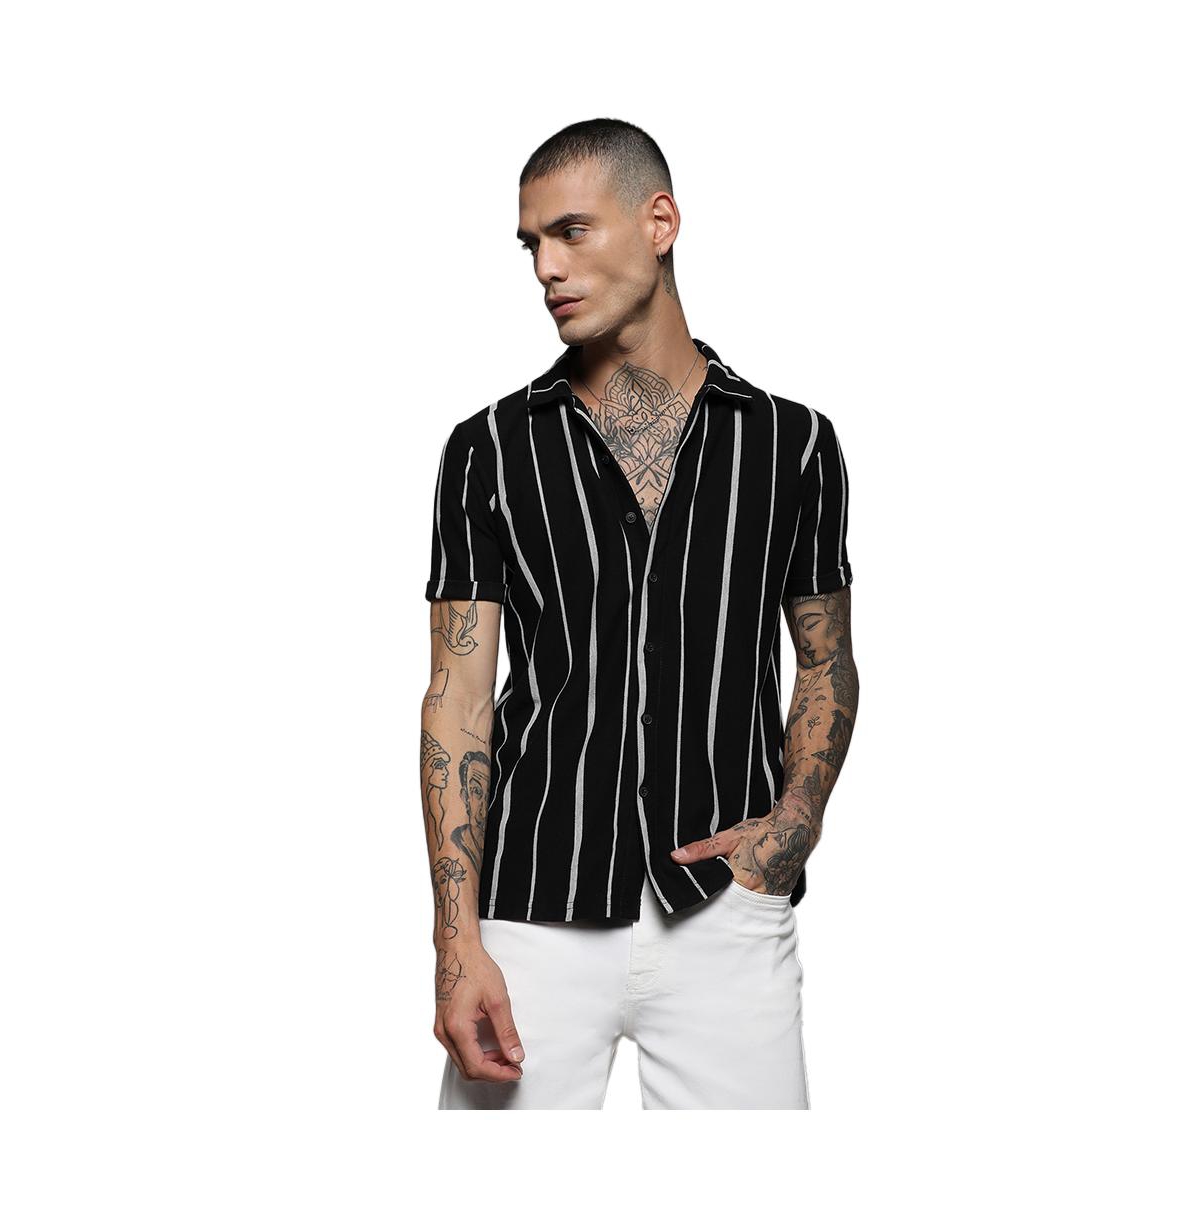 Men's Black & White Pencil Striped Shirt - Multicolor